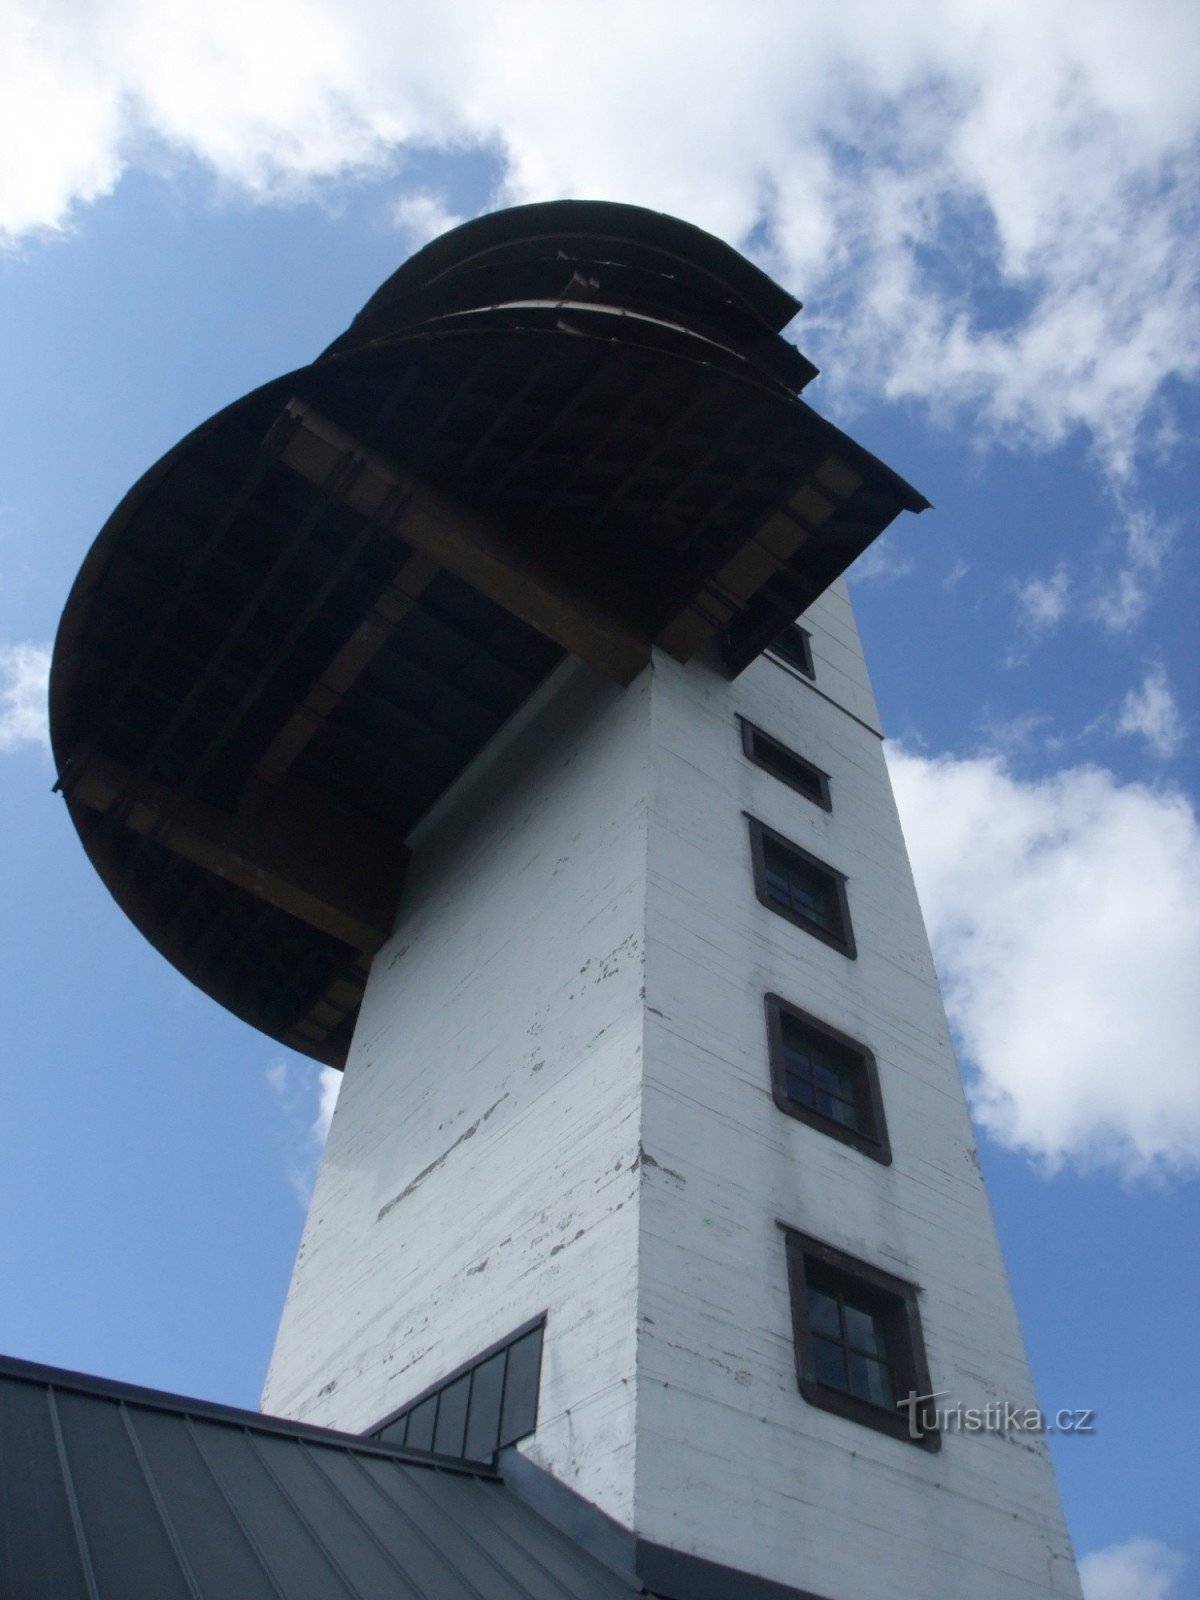 Poledník observation tower on Polední hora